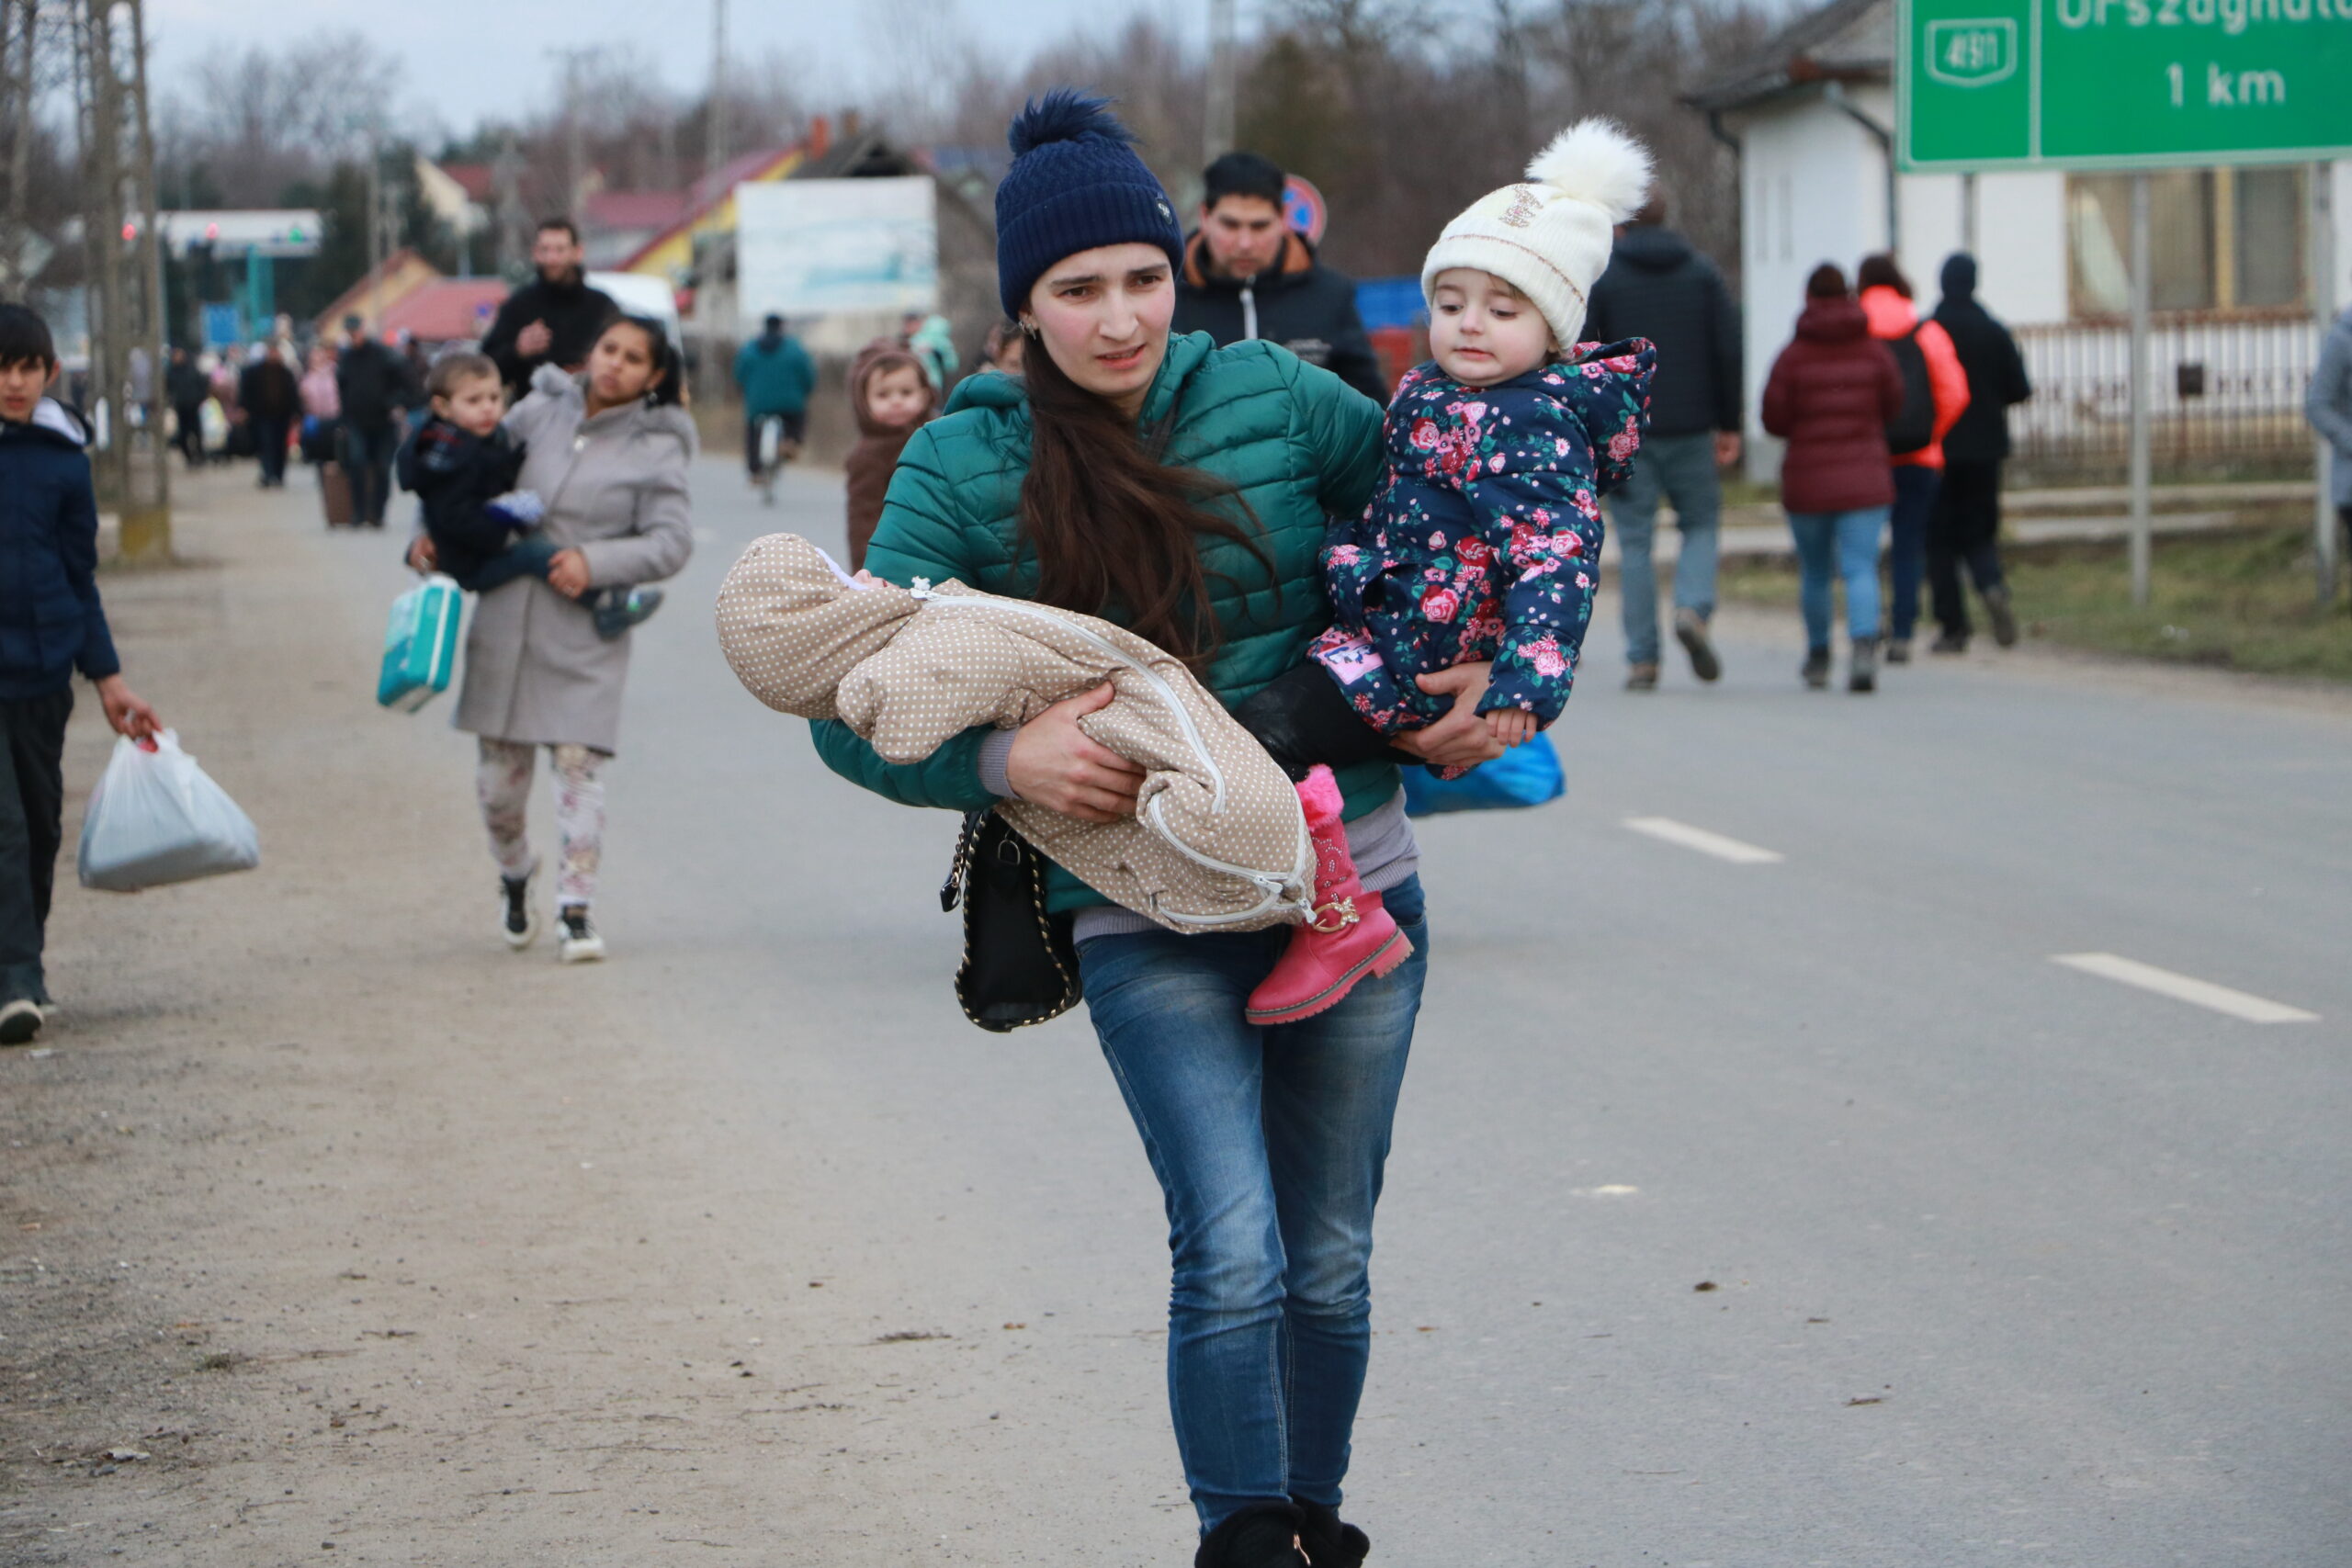 UNHCR/Zsolt Balla